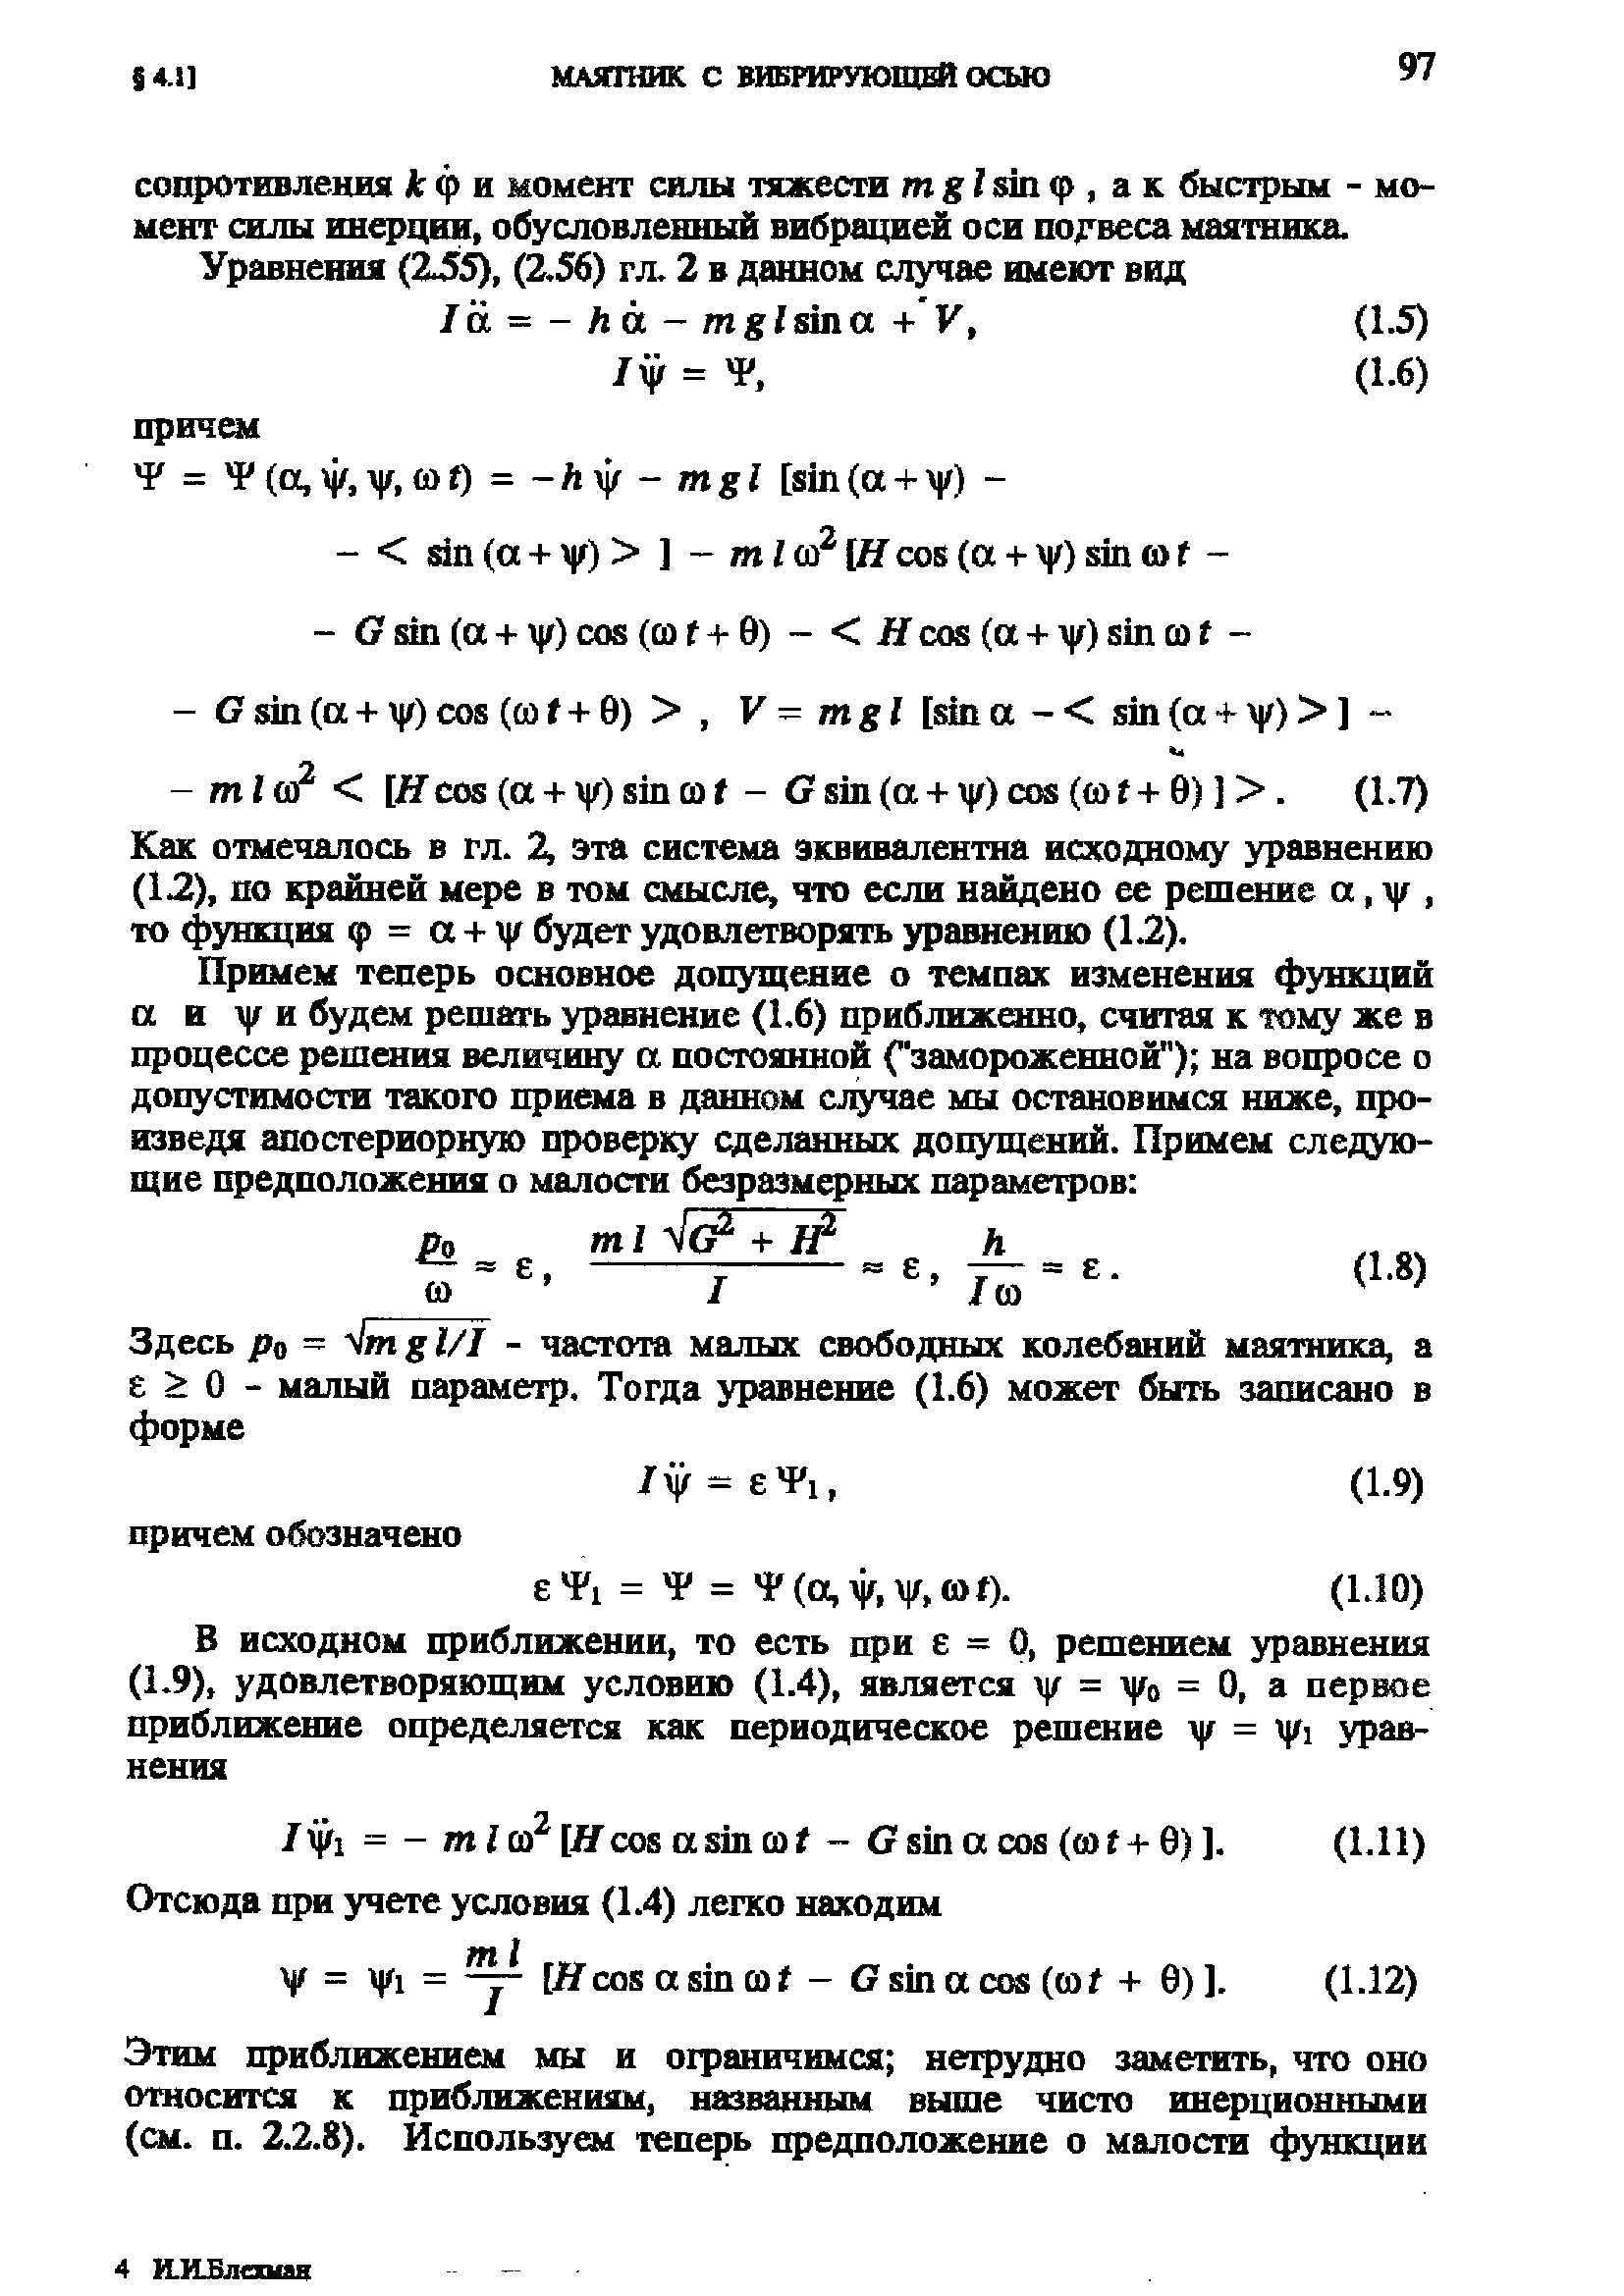 Как отмечалось в гл. 2, эта система эквивалентна исходному уравнению (12), по крайней мере в том смысле, что если найдено се решение а, у, то функция ф = а + j/ будет удовлетворять уравнению (1.2).
